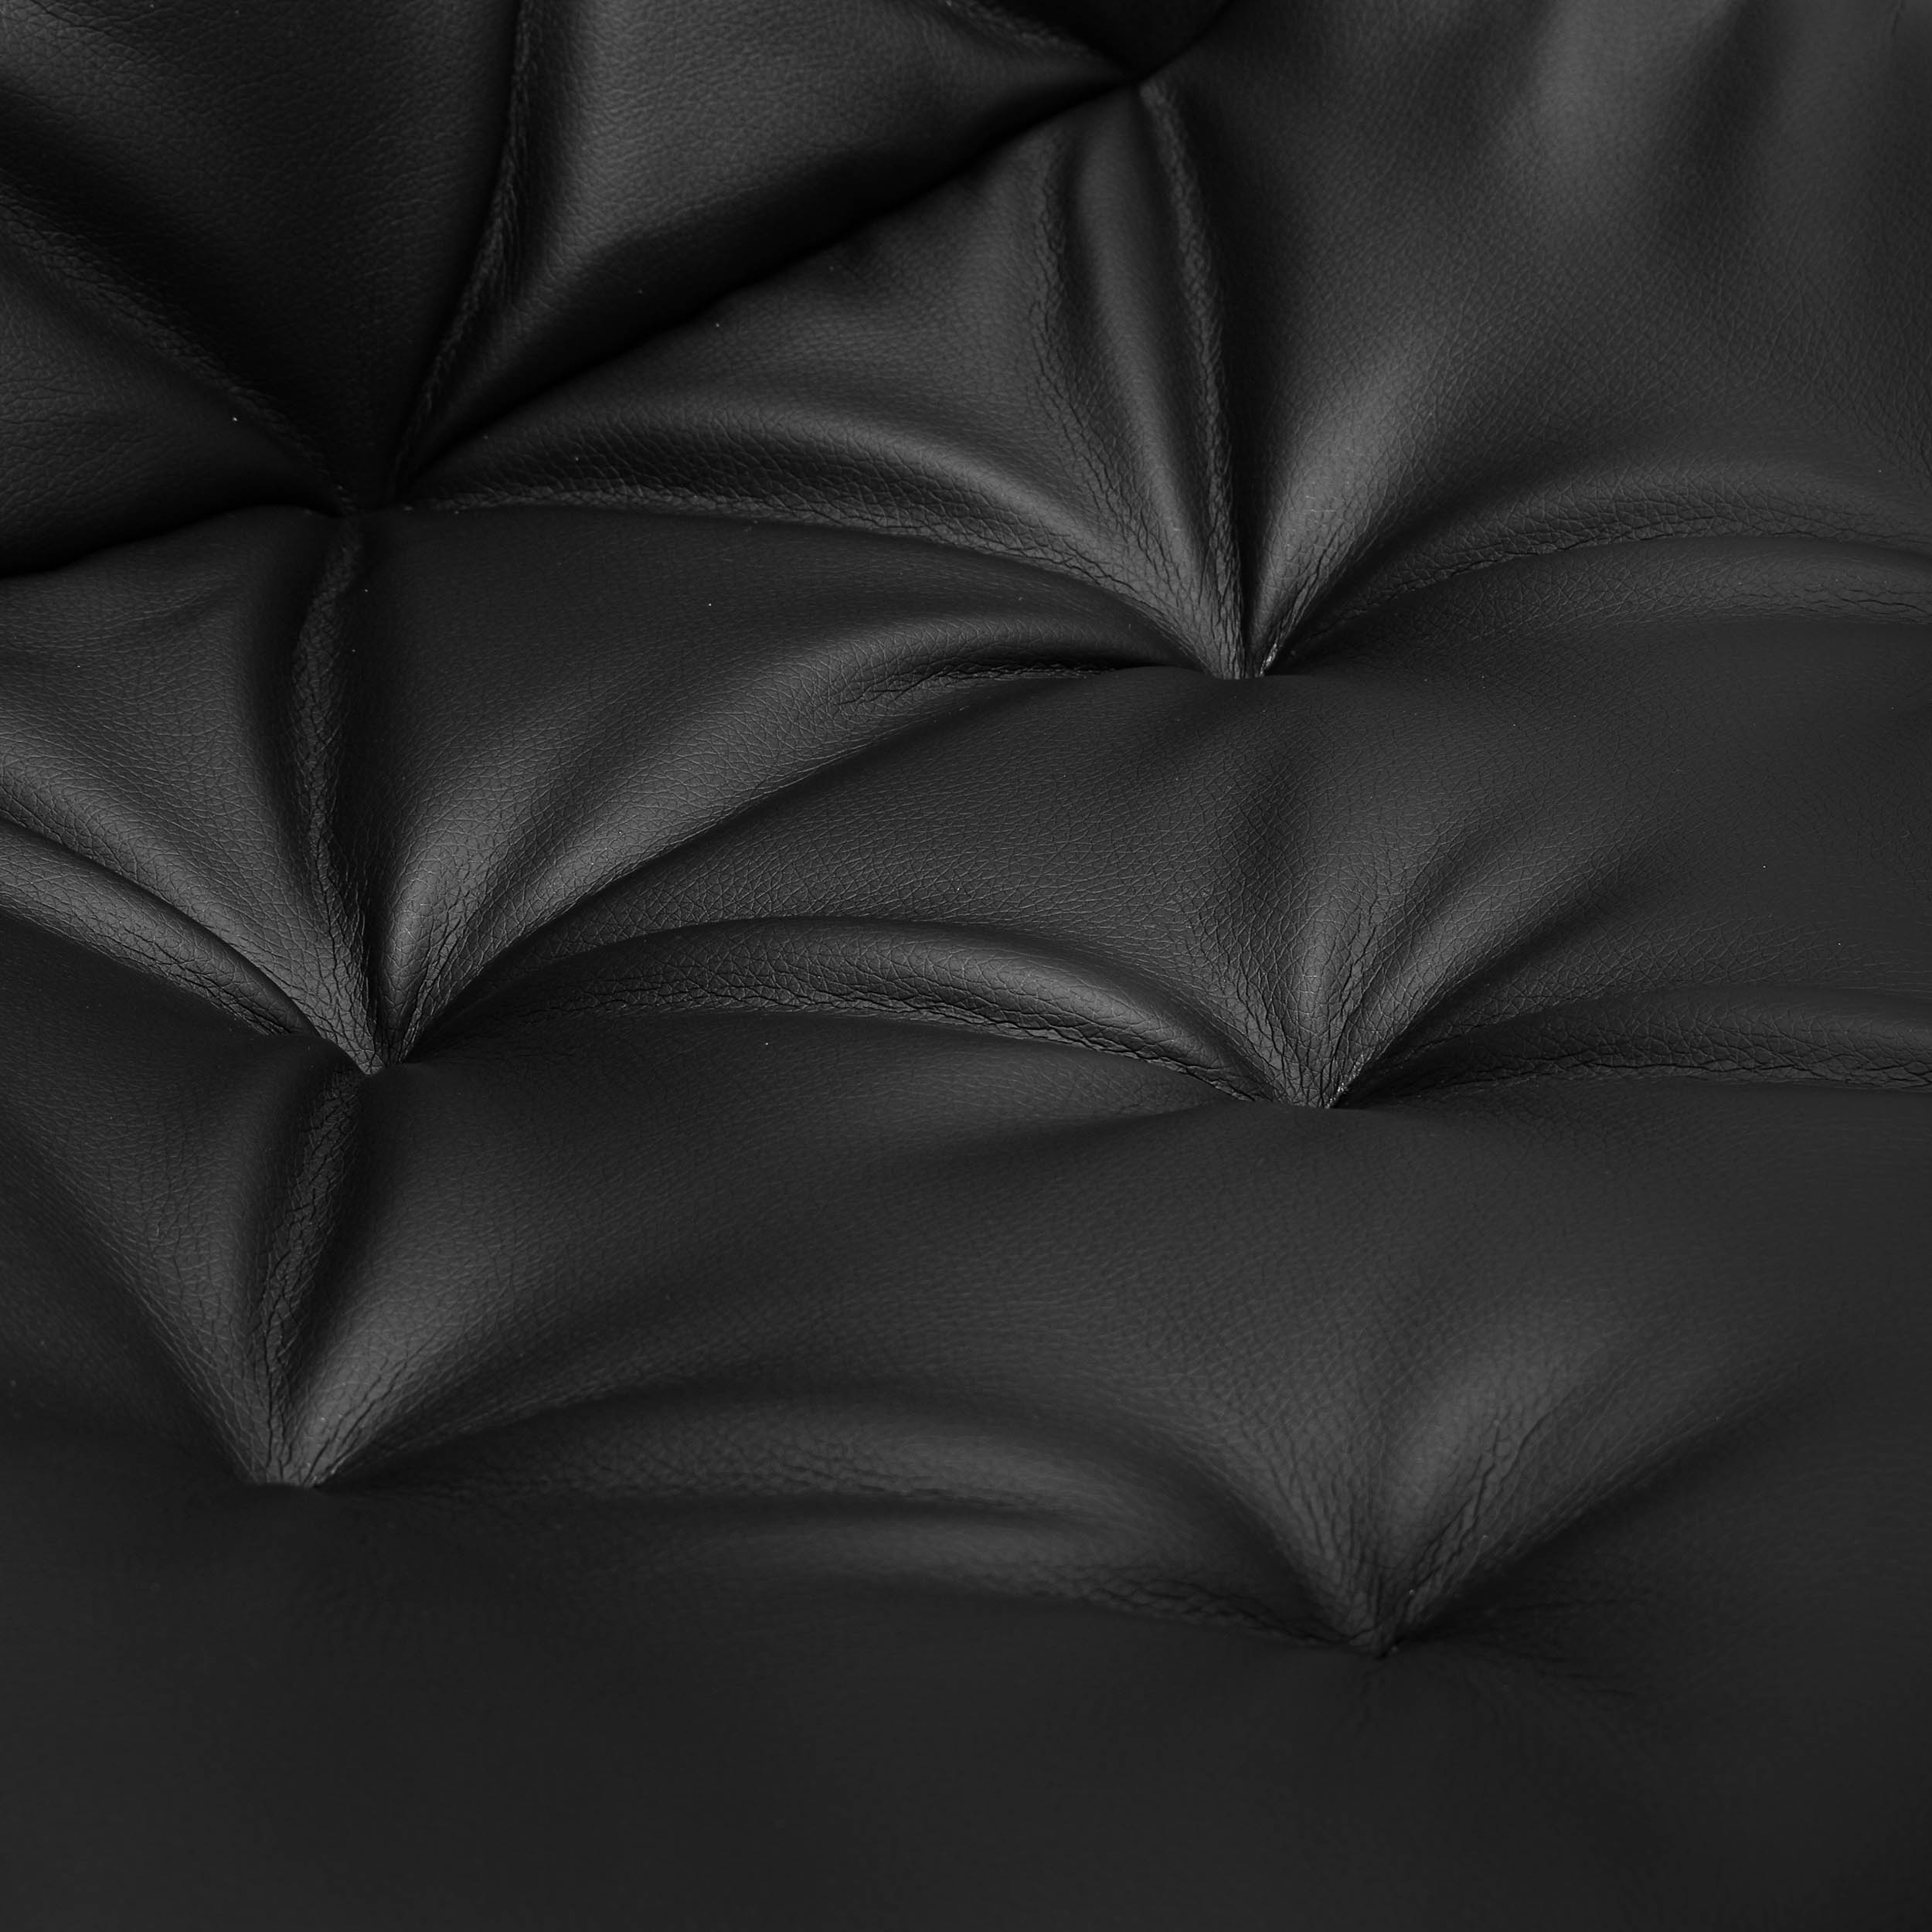 Krzesło tapicerowane ELIOT czarne